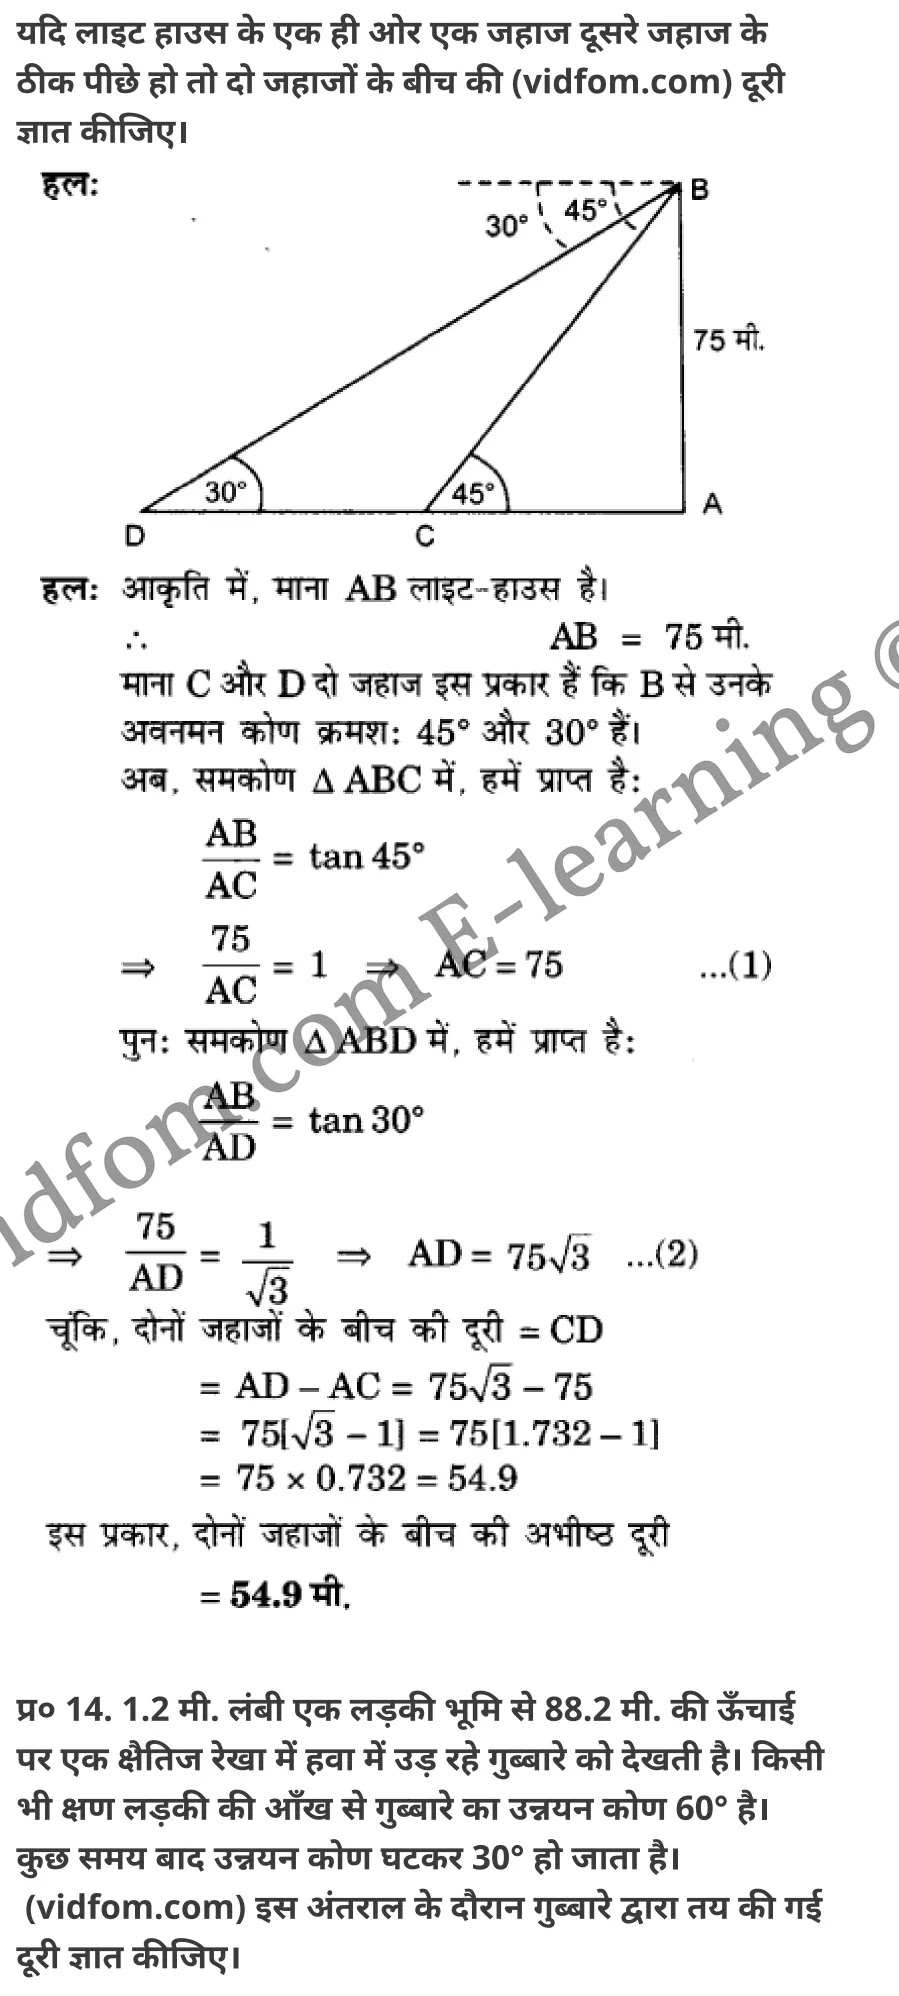 कक्षा 10 गणित  के नोट्स  हिंदी में एनसीईआरटी समाधान,     class 10 Maths chapter 9,   class 10 Maths chapter 9 ncert solutions in Maths,  class 10 Maths chapter 9 notes in hindi,   class 10 Maths chapter 9 question answer,   class 10 Maths chapter 9 notes,   class 10 Maths chapter 9 class 10 Maths  chapter 9 in  hindi,    class 10 Maths chapter 9 important questions in  hindi,   class 10 Maths hindi  chapter 9 notes in hindi,   class 10 Maths  chapter 9 test,   class 10 Maths  chapter 9 class 10 Maths  chapter 9 pdf,   class 10 Maths  chapter 9 notes pdf,   class 10 Maths  chapter 9 exercise solutions,  class 10 Maths  chapter 9,  class 10 Maths  chapter 9 notes study rankers,  class 10 Maths  chapter 9 notes,   class 10 Maths hindi  chapter 9 notes,    class 10 Maths   chapter 9  class 10  notes pdf,  class 10 Maths  chapter 9 class 10  notes  ncert,  class 10 Maths  chapter 9 class 10 pdf,   class 10 Maths  chapter 9  book,   class 10 Maths  chapter 9 quiz class 10  ,    10  th class 10 Maths chapter 9  book up board,   up board 10  th class 10 Maths chapter 9 notes,  class 10 Maths,   class 10 Maths ncert solutions in Maths,   class 10 Maths notes in hindi,   class 10 Maths question answer,   class 10 Maths notes,  class 10 Maths class 10 Maths  chapter 9 in  hindi,    class 10 Maths important questions in  hindi,   class 10 Maths notes in hindi,    class 10 Maths test,  class 10 Maths class 10 Maths  chapter 9 pdf,   class 10 Maths notes pdf,   class 10 Maths exercise solutions,   class 10 Maths,  class 10 Maths notes study rankers,   class 10 Maths notes,  class 10 Maths notes,   class 10 Maths  class 10  notes pdf,   class 10 Maths class 10  notes  ncert,   class 10 Maths class 10 pdf,   class 10 Maths  book,  class 10 Maths quiz class 10  ,  10  th class 10 Maths    book up board,    up board 10  th class 10 Maths notes,      कक्षा 10 गणित अध्याय 9 ,  कक्षा 10 गणित, कक्षा 10 गणित अध्याय 9  के नोट्स हिंदी में,  कक्षा 10 का गणित अध्याय 9 का प्रश्न उत्तर,  कक्षा 10 गणित अध्याय 9  के नोट्स,  10 कक्षा गणित  हिंदी में, कक्षा 10 गणित अध्याय 9  हिंदी में,  कक्षा 10 गणित अध्याय 9  महत्वपूर्ण प्रश्न हिंदी में, कक्षा 10   हिंदी के नोट्स  हिंदी में, गणित हिंदी  कक्षा 10 नोट्स pdf,    गणित हिंदी  कक्षा 10 नोट्स 2021 ncert,  गणित हिंदी  कक्षा 10 pdf,   गणित हिंदी  पुस्तक,   गणित हिंदी की बुक,   गणित हिंदी  प्रश्नोत्तरी class 10 ,  10   वीं गणित  पुस्तक up board,   बिहार बोर्ड 10  पुस्तक वीं गणित नोट्स,    गणित  कक्षा 10 नोट्स 2021 ncert,   गणित  कक्षा 10 pdf,   गणित  पुस्तक,   गणित की बुक,   गणित  प्रश्नोत्तरी class 10,   कक्षा 10 गणित,  कक्षा 10 गणित  के नोट्स हिंदी में,  कक्षा 10 का गणित का प्रश्न उत्तर,  कक्षा 10 गणित  के नोट्स, 10 कक्षा गणित 2021  हिंदी में, कक्षा 10 गणित  हिंदी में, कक्षा 10 गणित  महत्वपूर्ण प्रश्न हिंदी में, कक्षा 10 गणित  हिंदी के नोट्स  हिंदी में, गणित हिंदी  कक्षा 10 नोट्स pdf,   गणित हिंदी  कक्षा 10 नोट्स 2021 ncert,   गणित हिंदी  कक्षा 10 pdf,  गणित हिंदी  पुस्तक,   गणित हिंदी की बुक,   गणित हिंदी  प्रश्नोत्तरी class 10 ,  10   वीं गणित  पुस्तक up board,  बिहार बोर्ड 10  पुस्तक वीं गणित नोट्स,    गणित  कक्षा 10 नोट्स 2021 ncert,  गणित  कक्षा 10 pdf,   गणित  पुस्तक,  गणित की बुक,   गणित  प्रश्नोत्तरी   class 10,   10th Maths   book in hindi, 10th Maths notes in hindi, cbse books for class 10  , cbse books in hindi, cbse ncert books, class 10   Maths   notes in hindi,  class 10 Maths hindi ncert solutions, Maths 2020, Maths  2021,